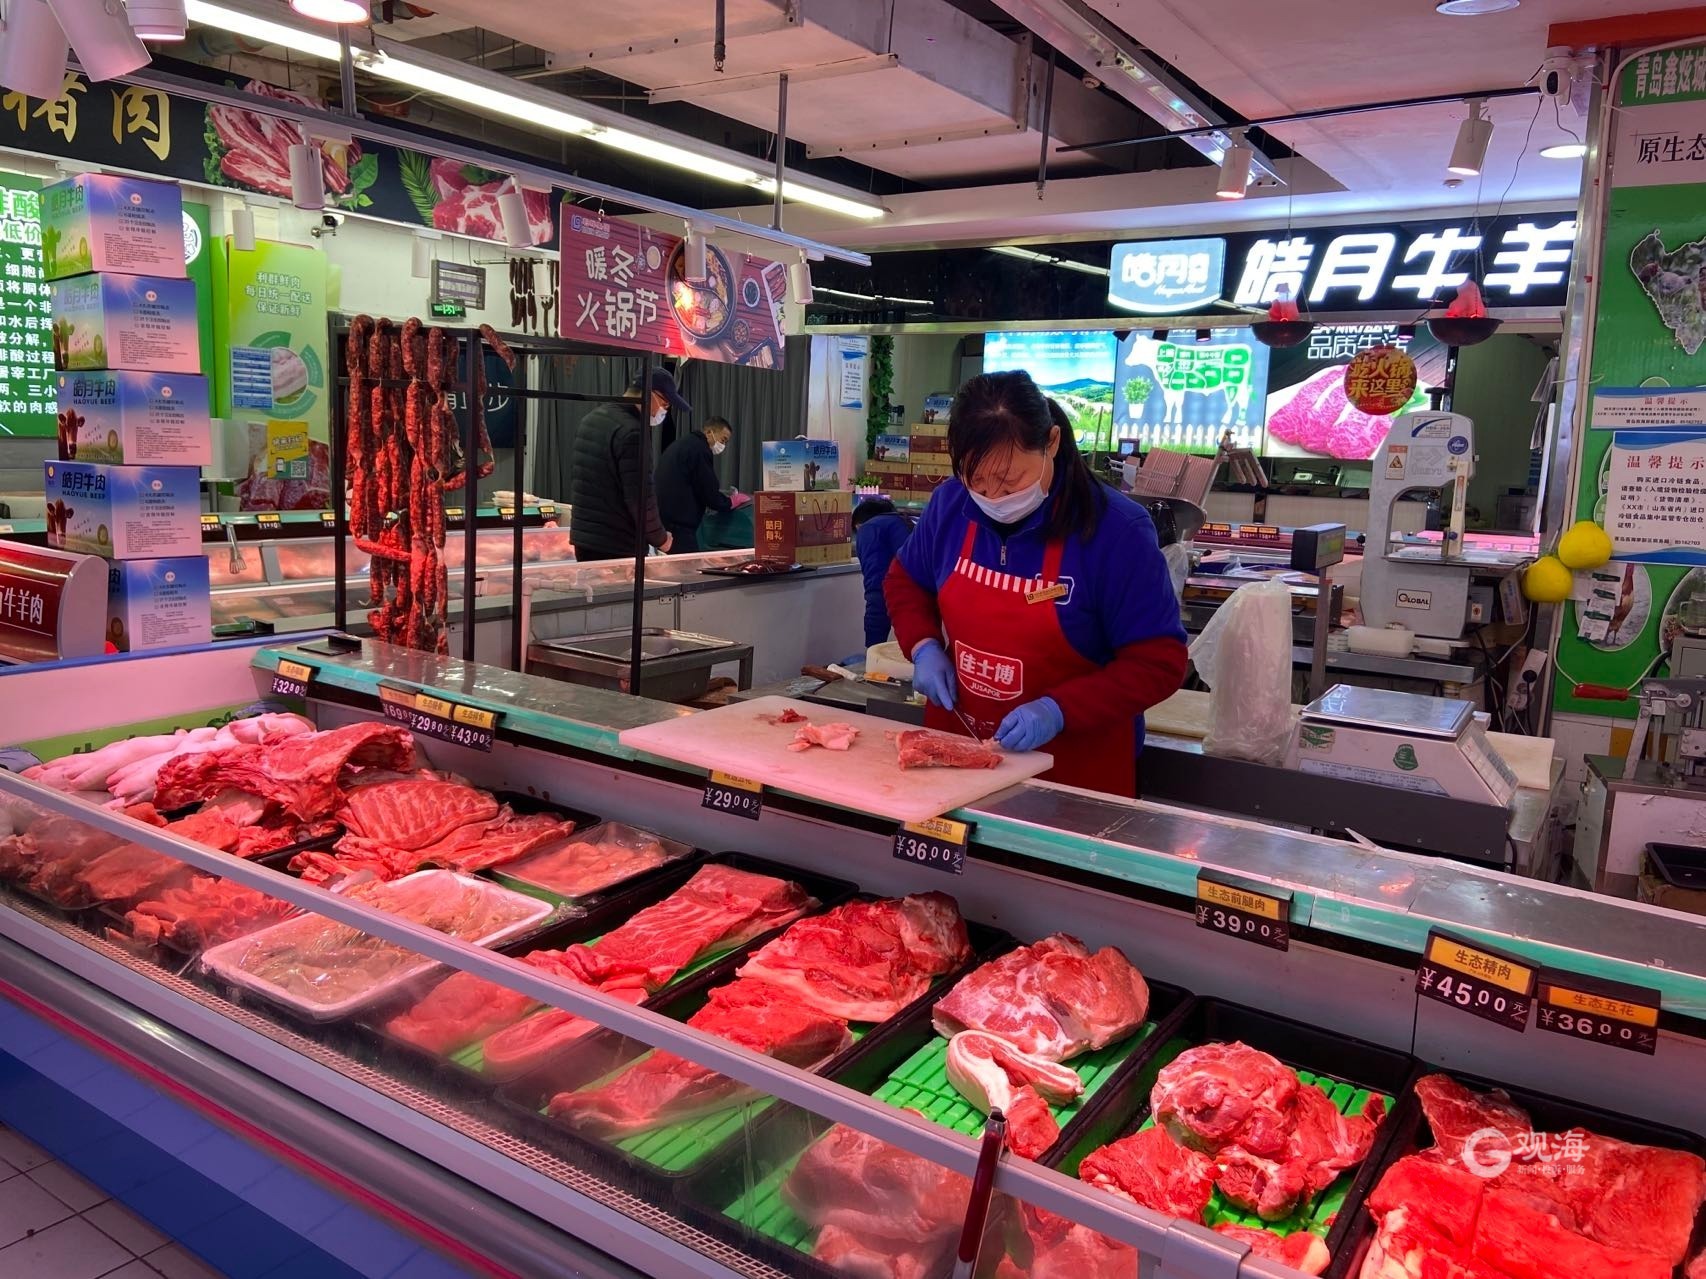 街里特色小吃街 - 市场导航 - 青岛市城阳蔬菜水产品批发市场